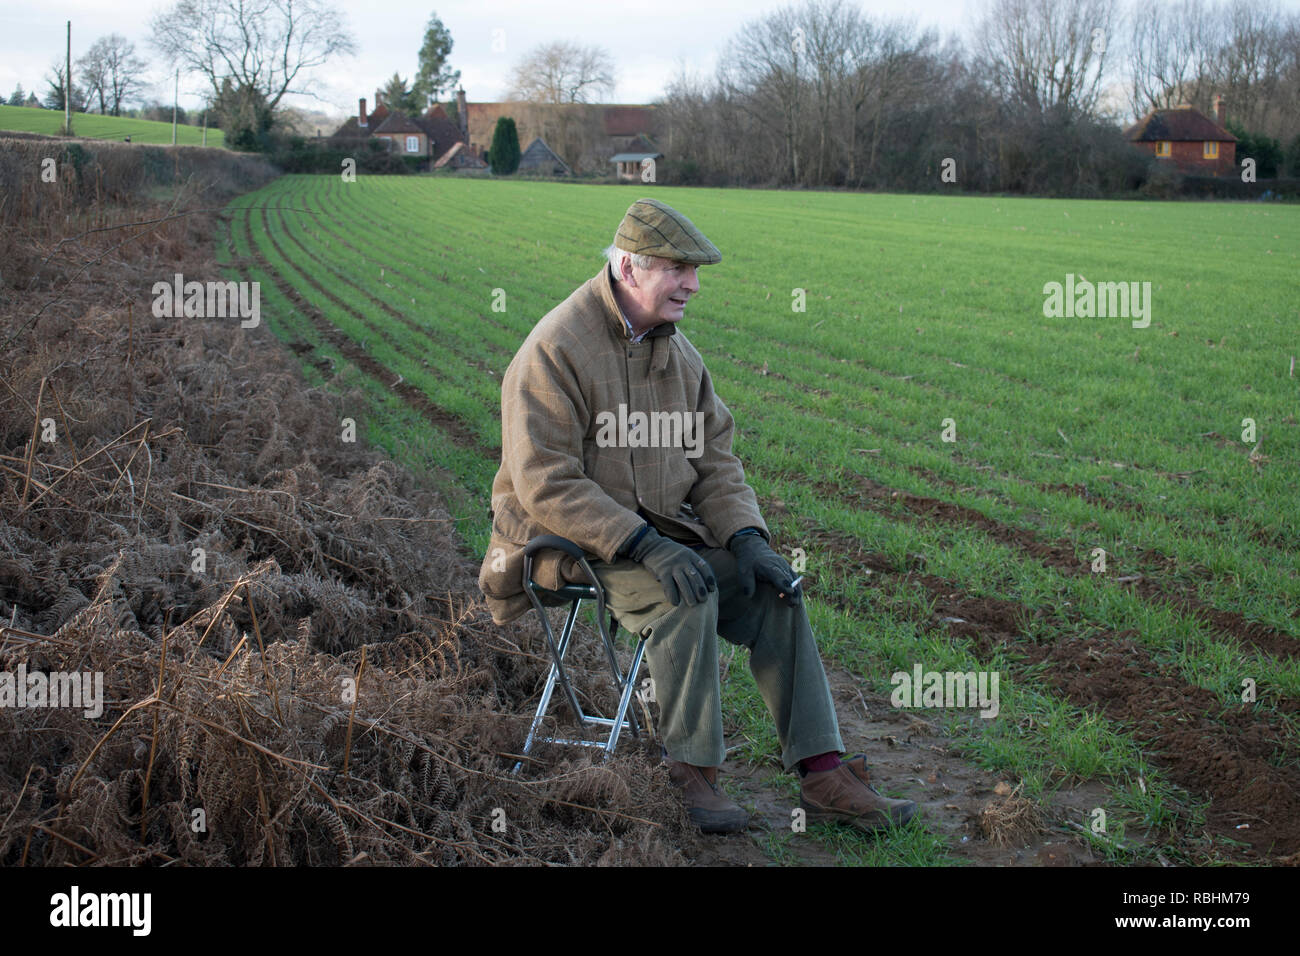 Bâton de tir, homme âgé plus âgé assis dans la campagne Field Sports amateur. Midhurst West Sussex 2019. HOMER SYKES des années 2010 Banque D'Images